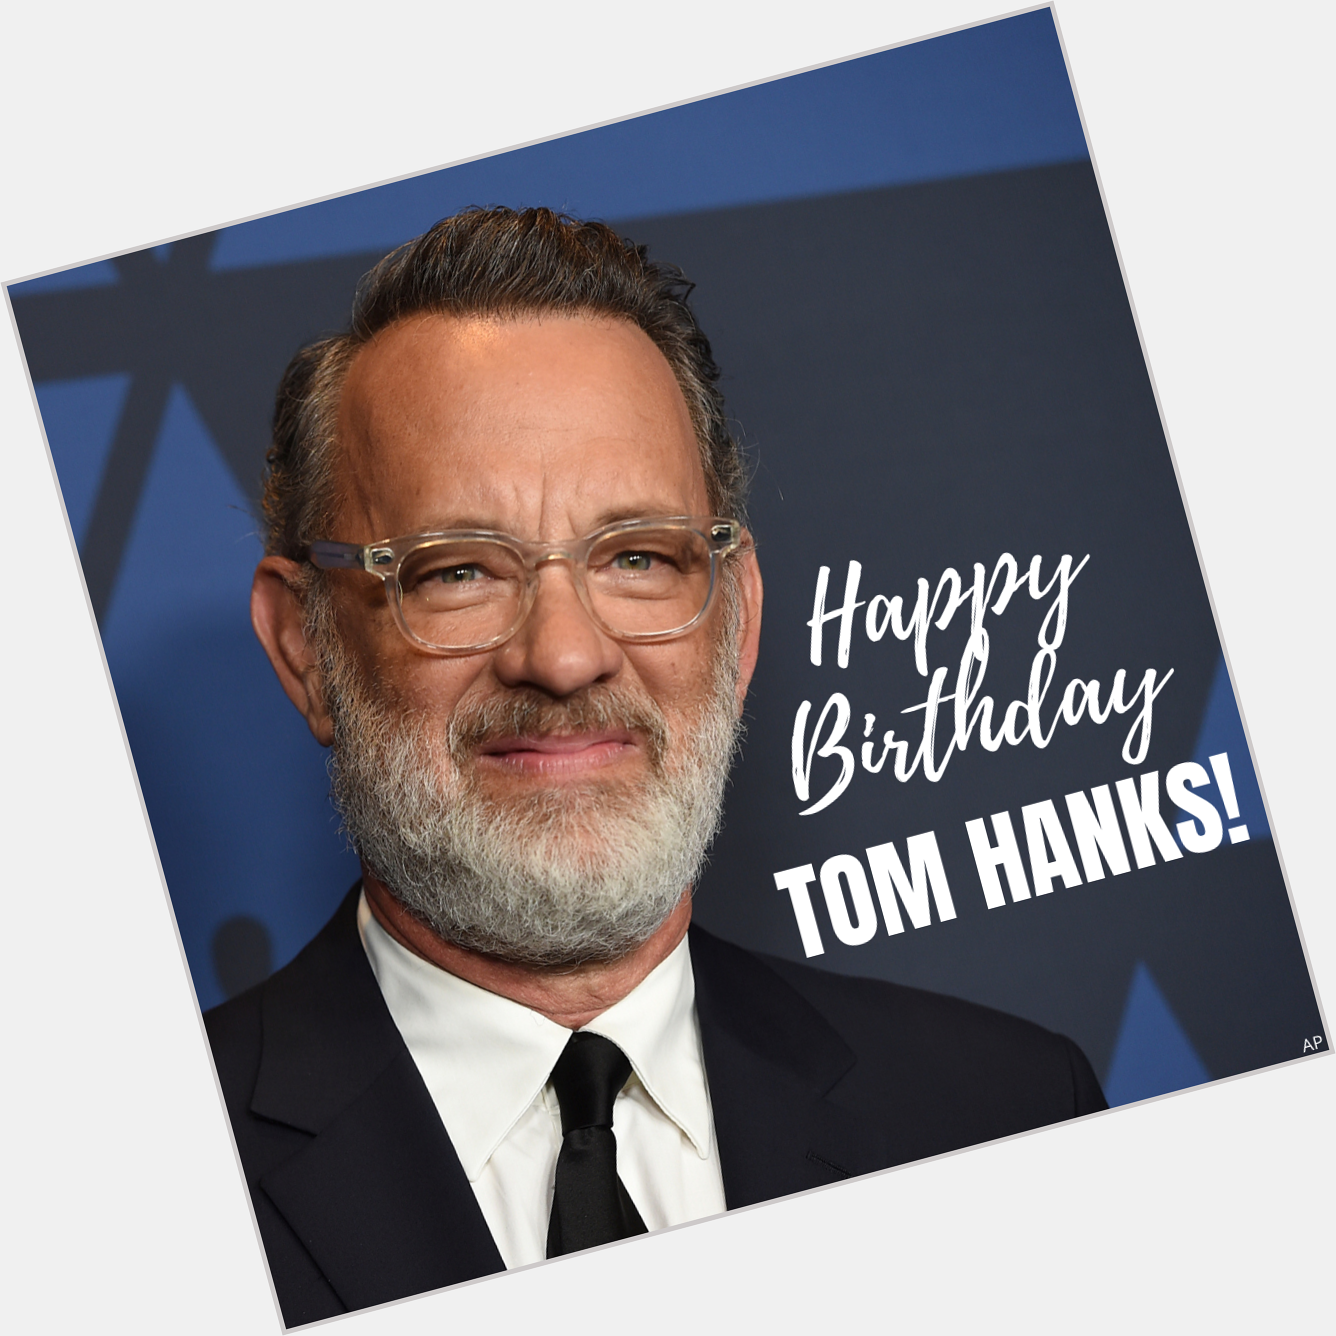  HAPPY BIRTHDAY! Tom Hanks turns 64 today. 